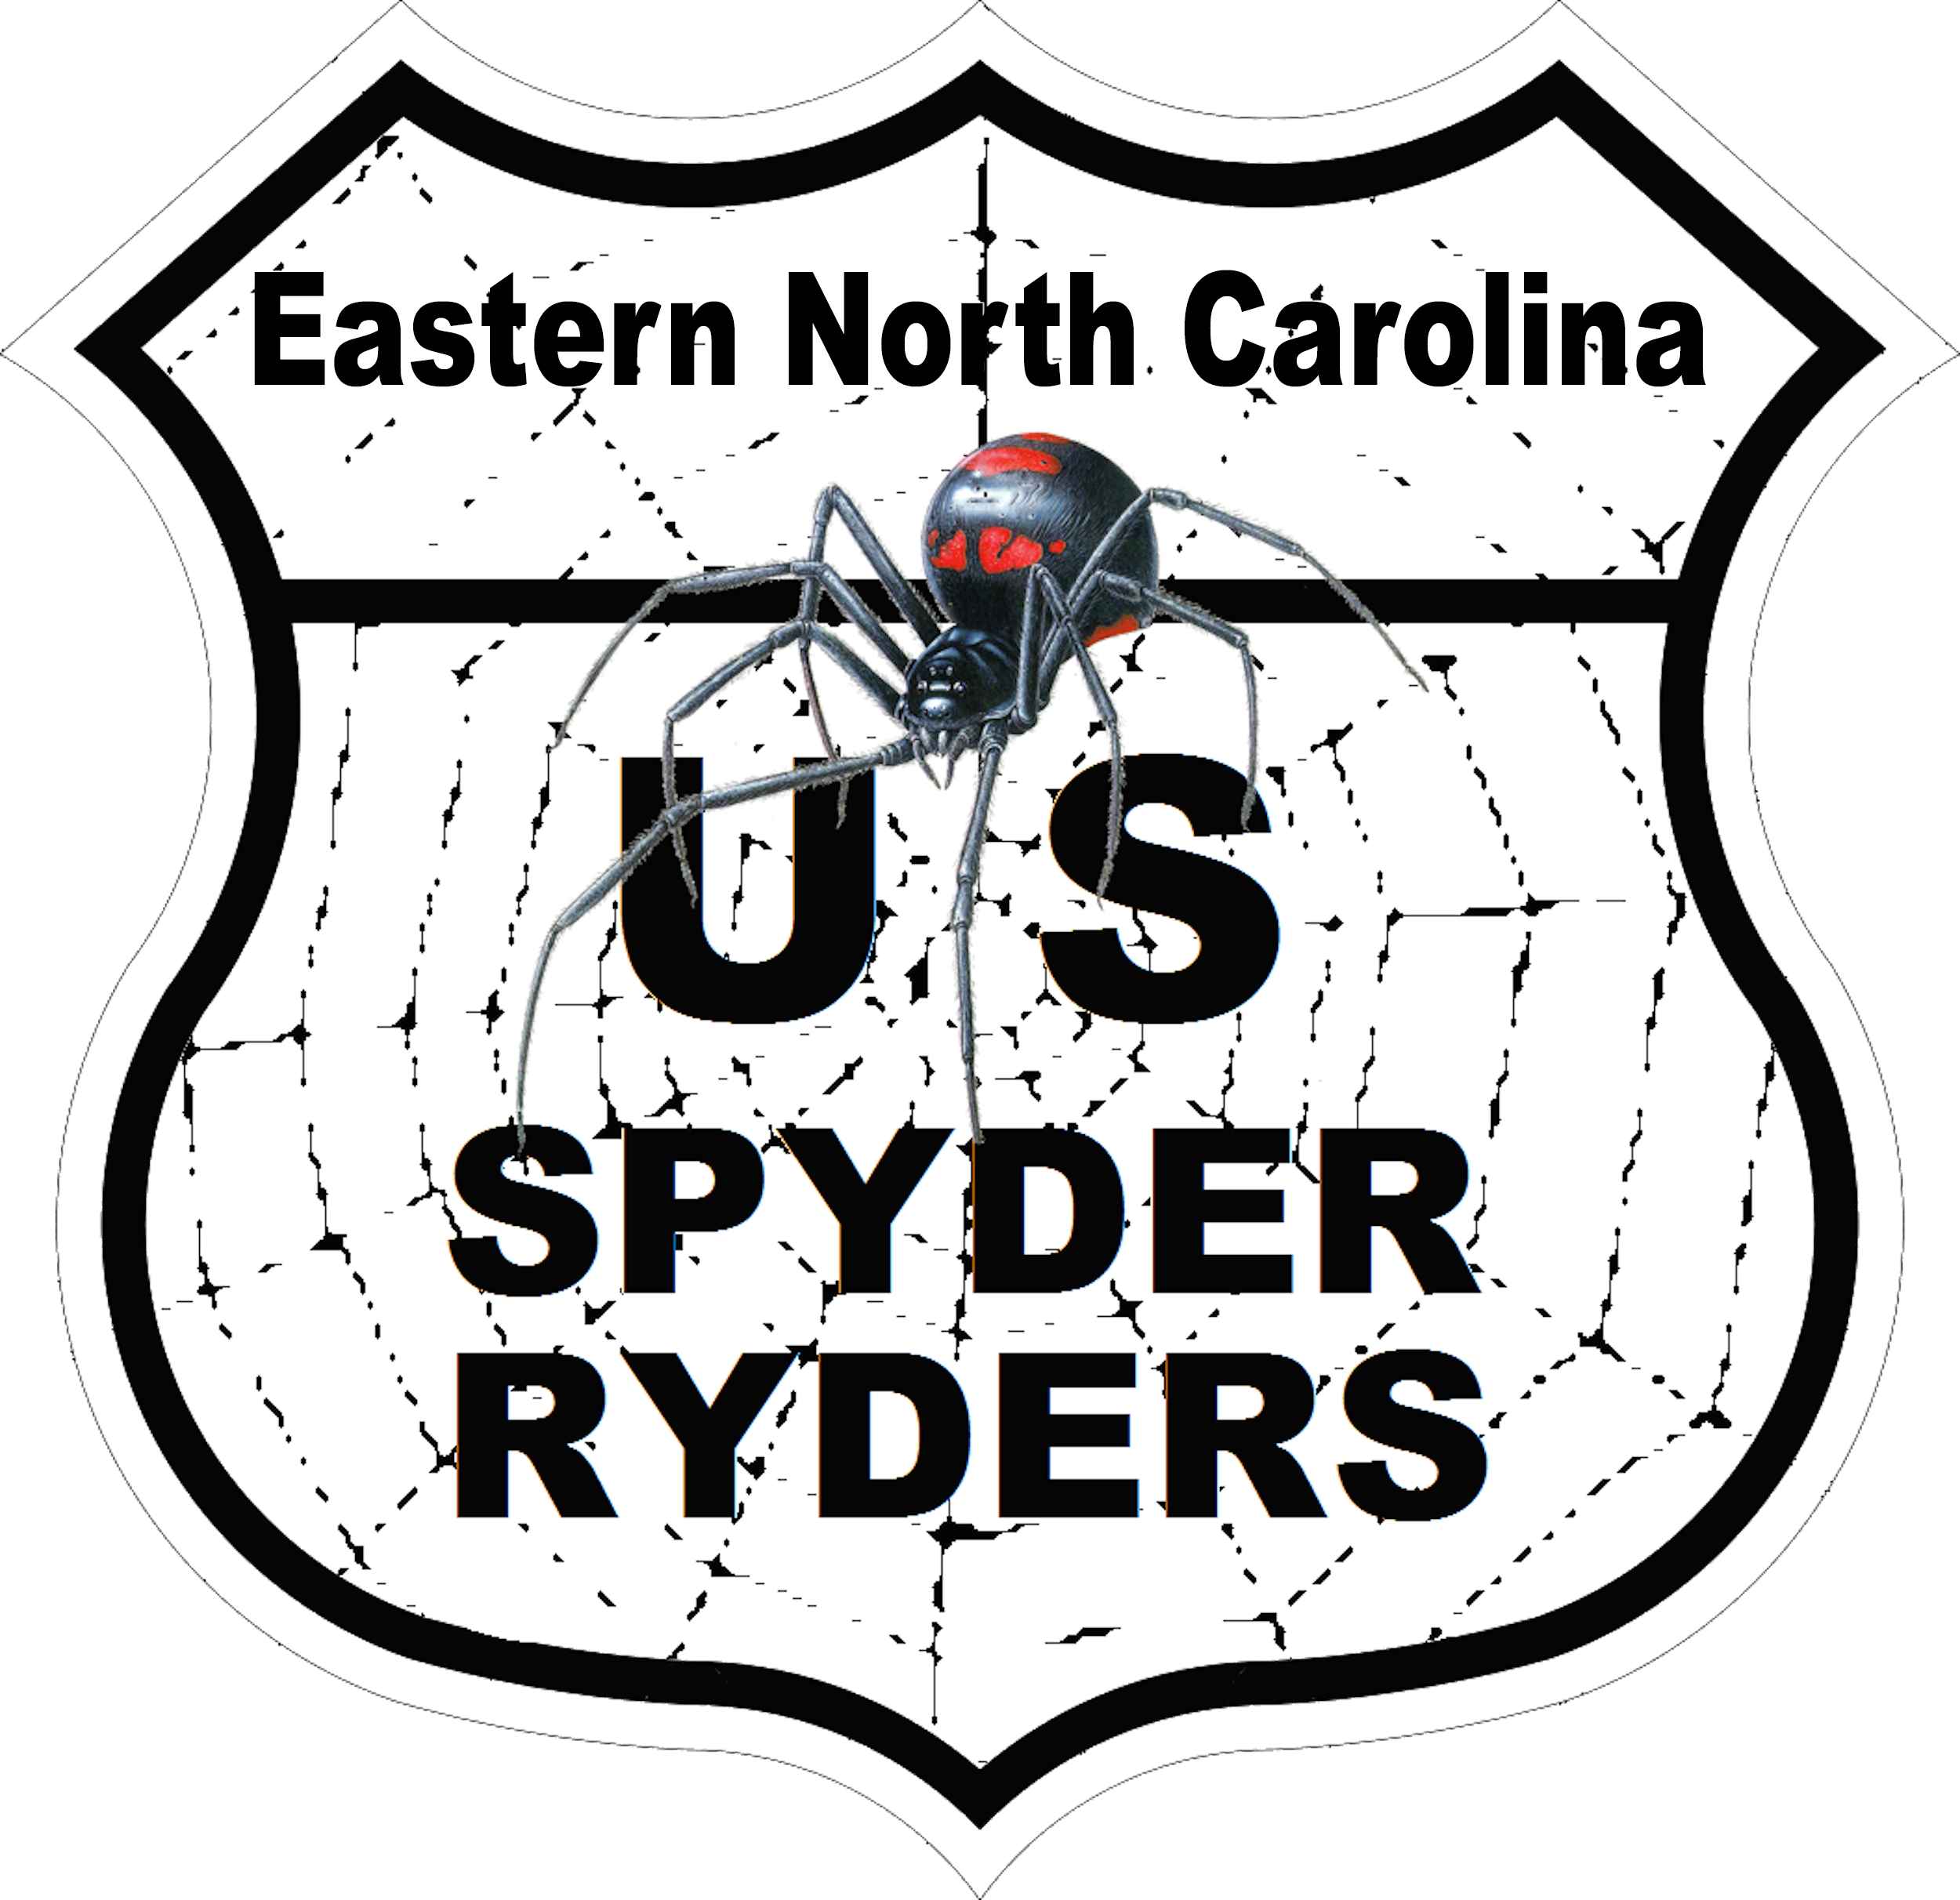 US_Spyder_Ryder_NC_Eastern North Carolina.png